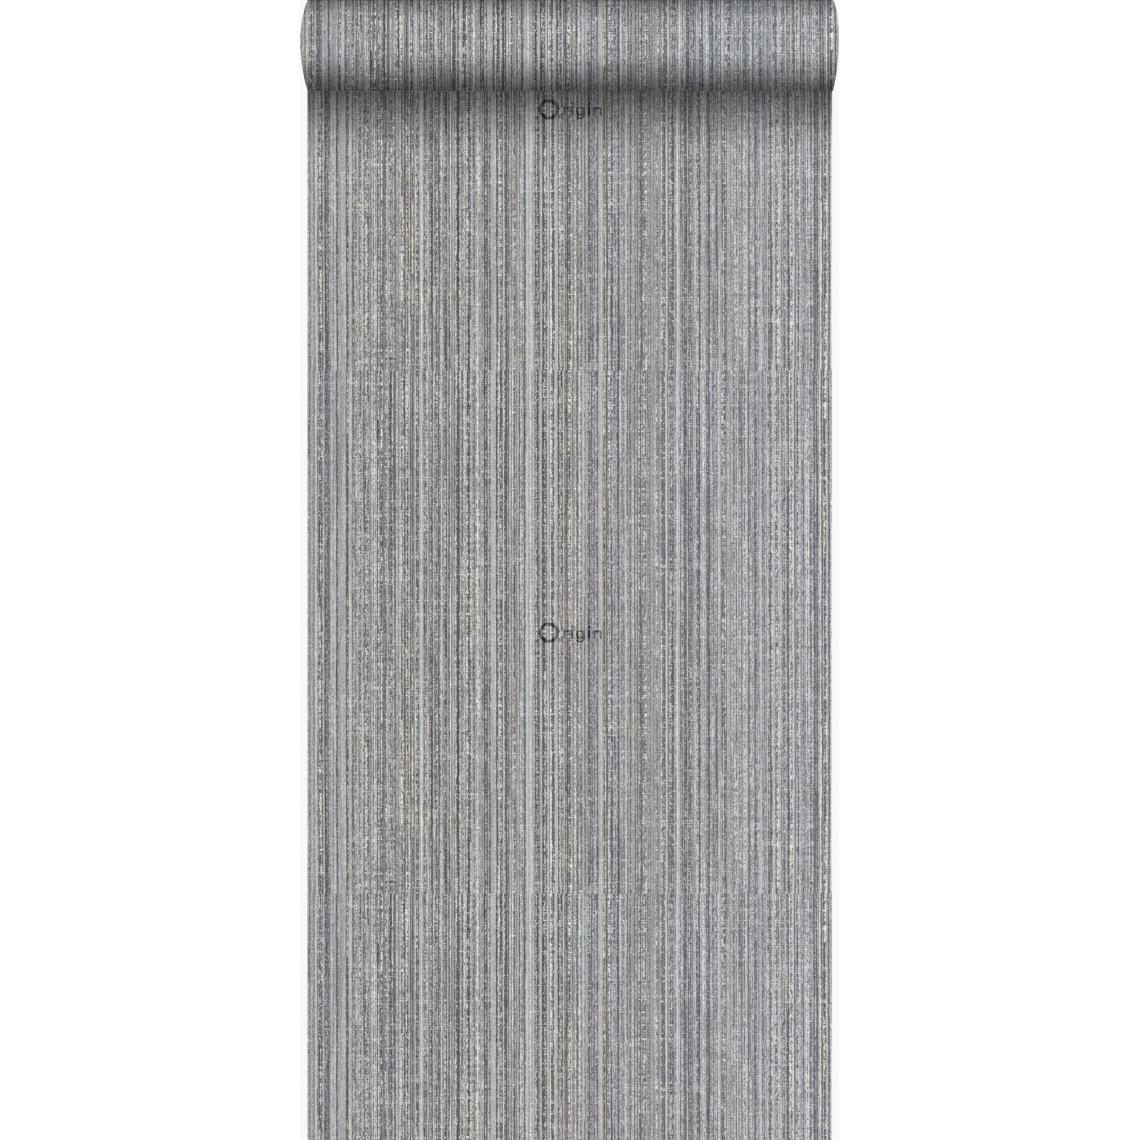 Origin - Origin papier peint texture gris foncé - 306730 - 70 cm x 10,05 m - Papier peint